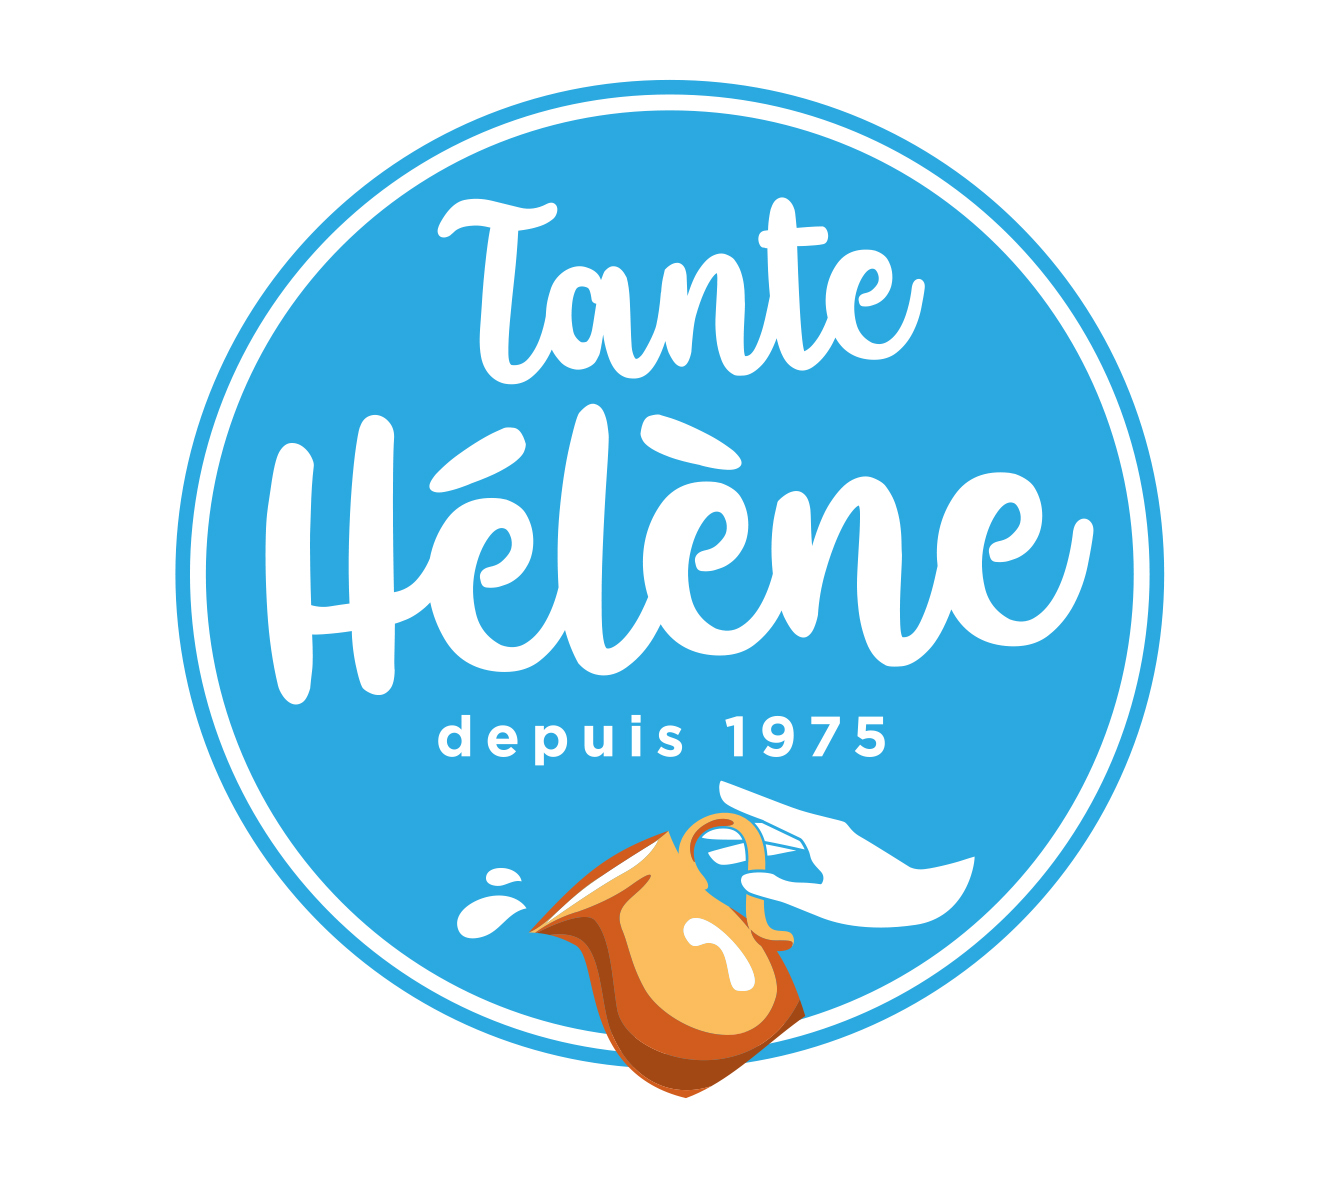 TANTE HELENE